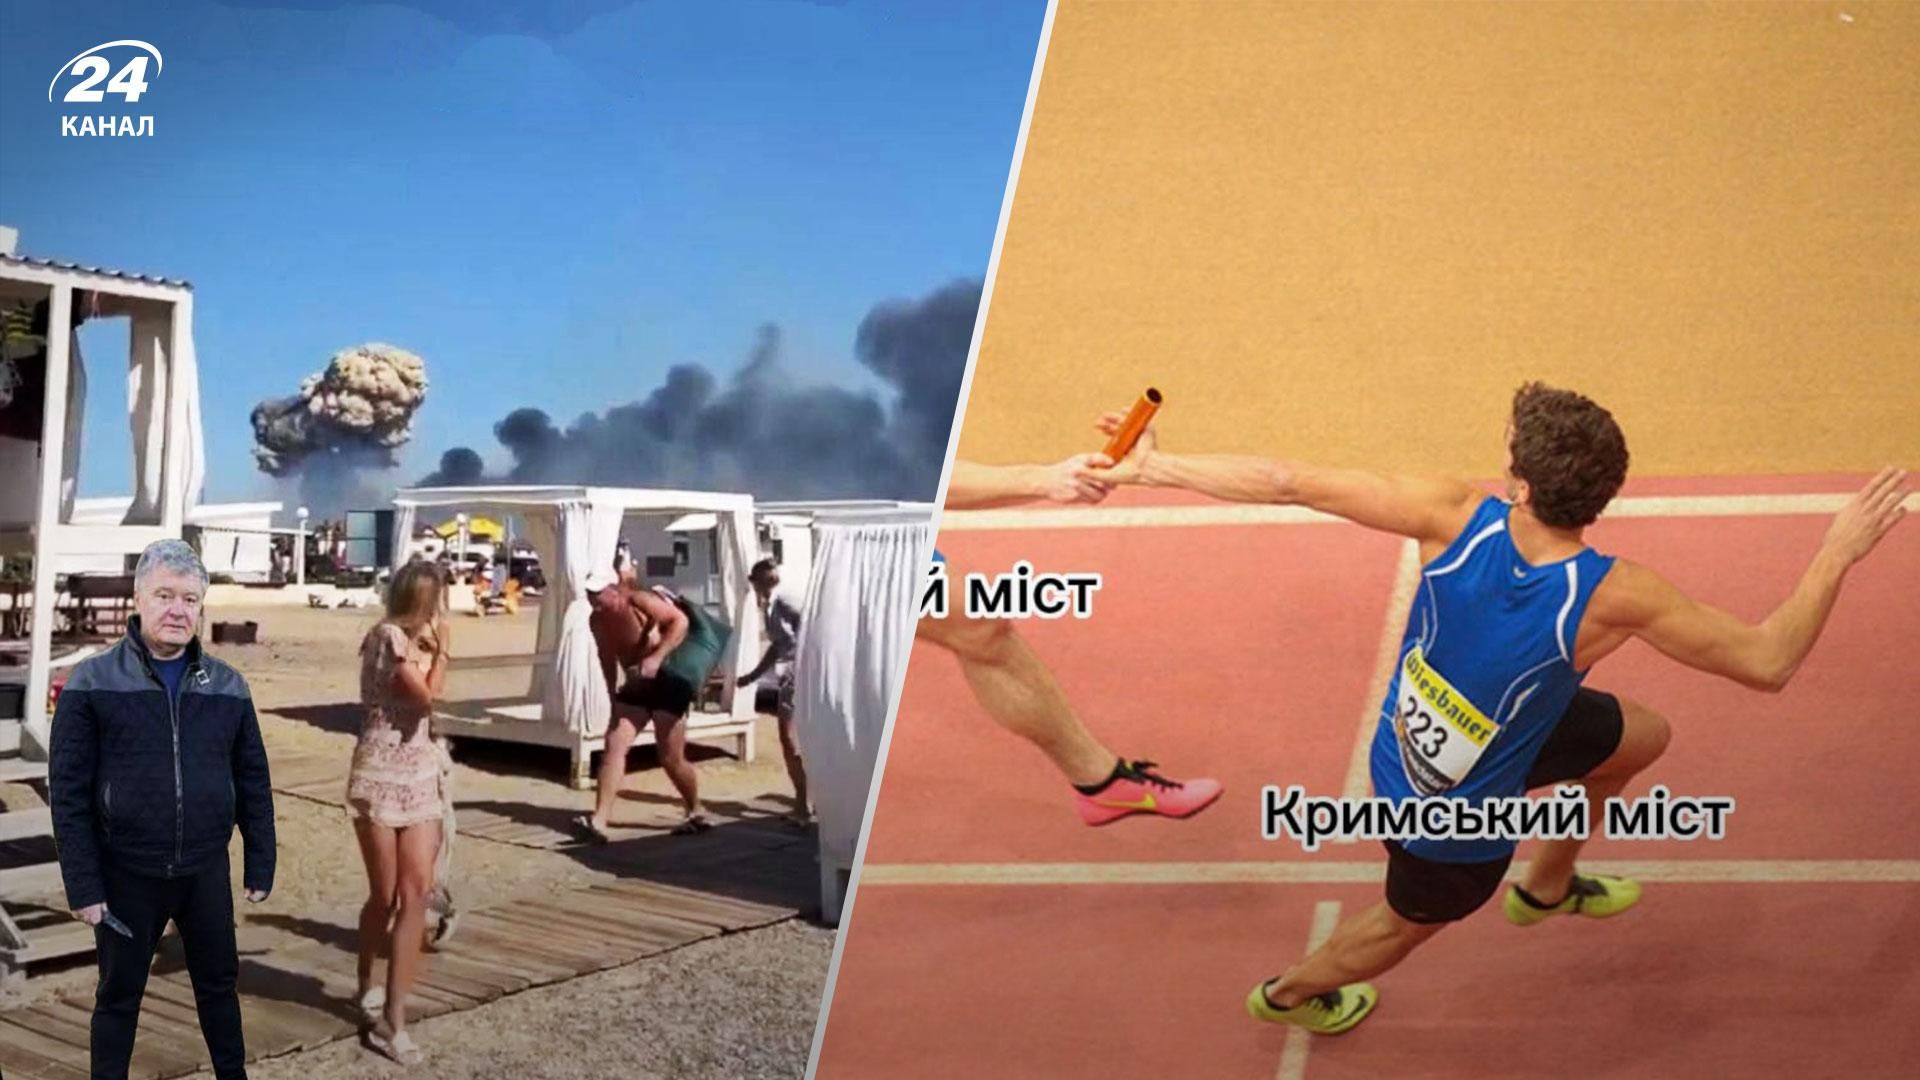 Сеть заполонили мемы о взрывах во временно оккупированном Крыму 9 августа